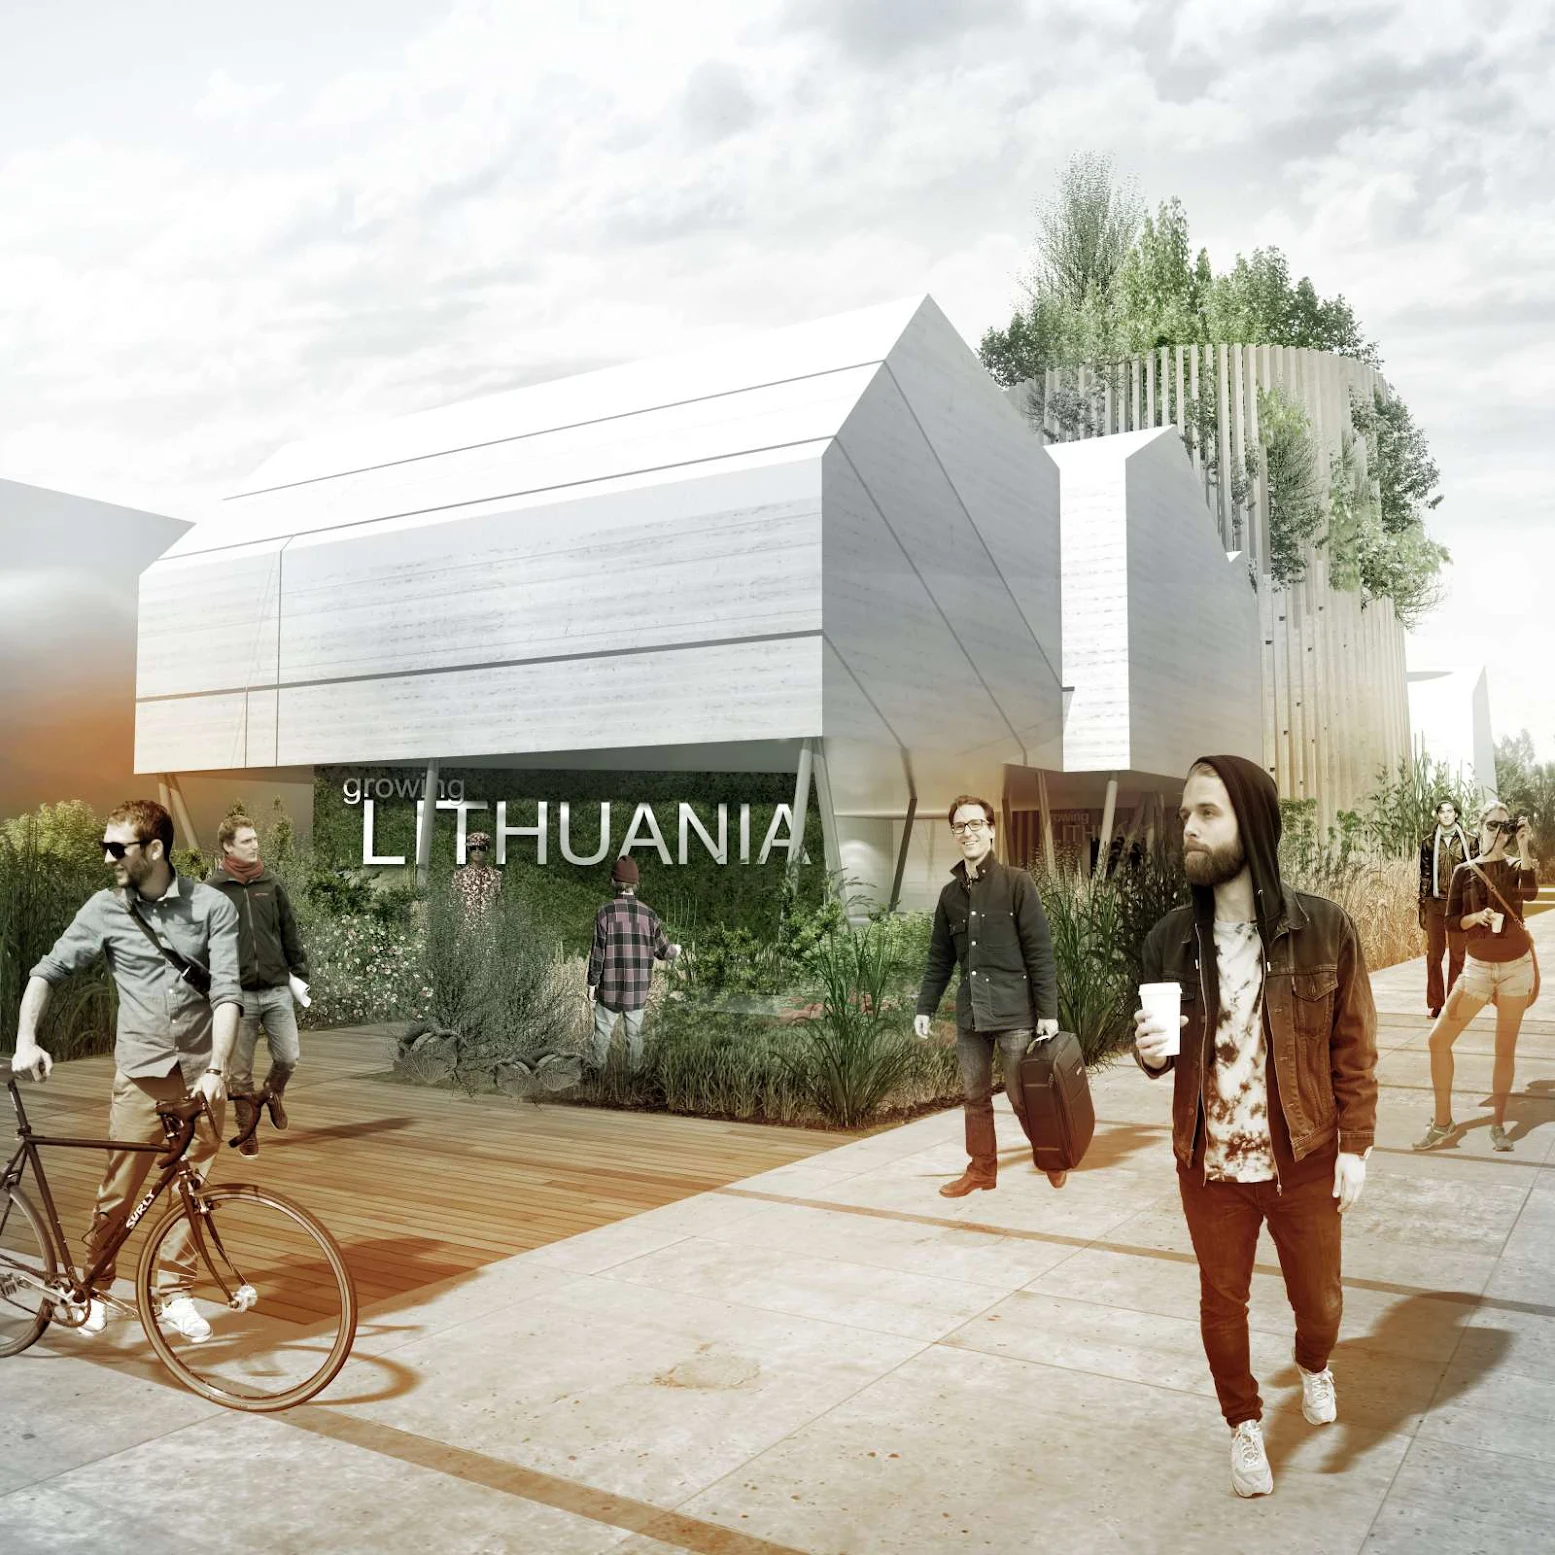 Lithuanian Pavilion Expo 2015 by Vilnius Architecture Studio